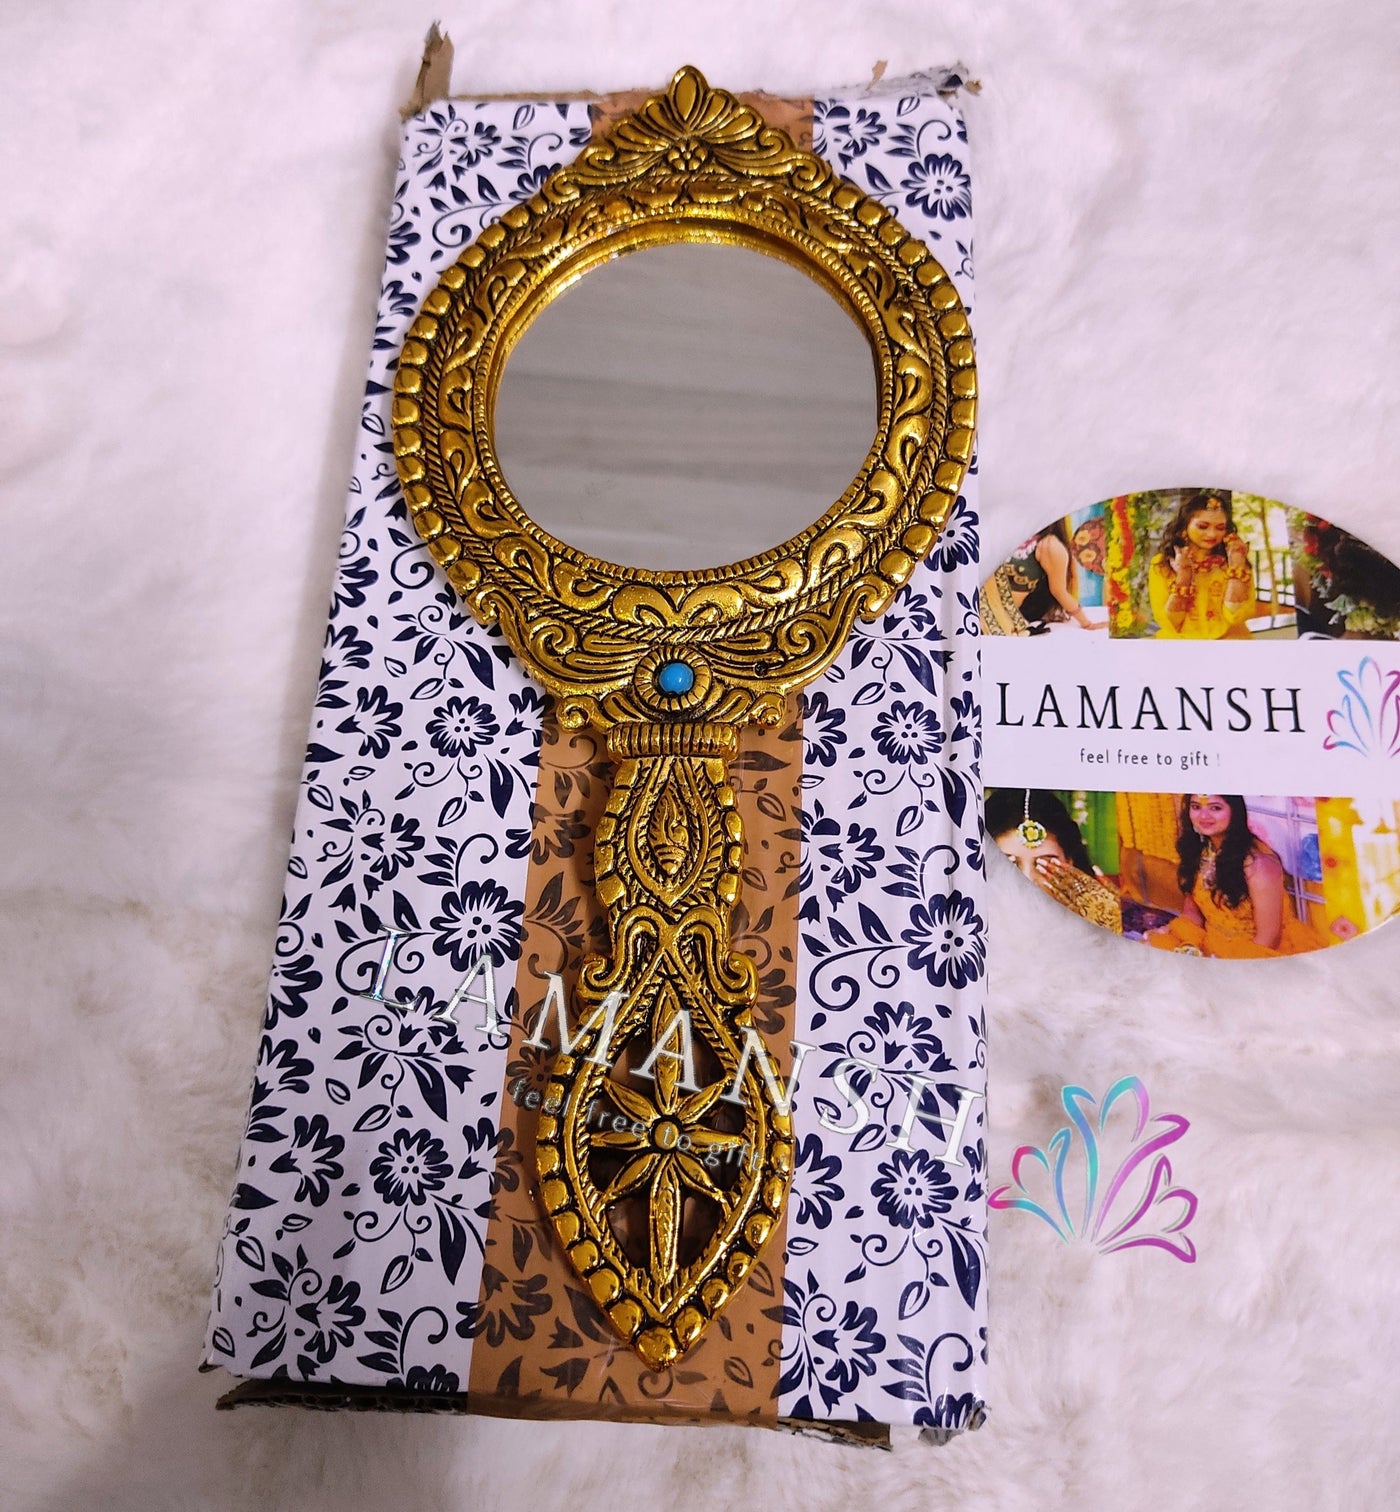 Lamansh designer mirrors LAMANSH® Metal Gold Plated Hand Mirror for Return Gifts & Favors 🎁